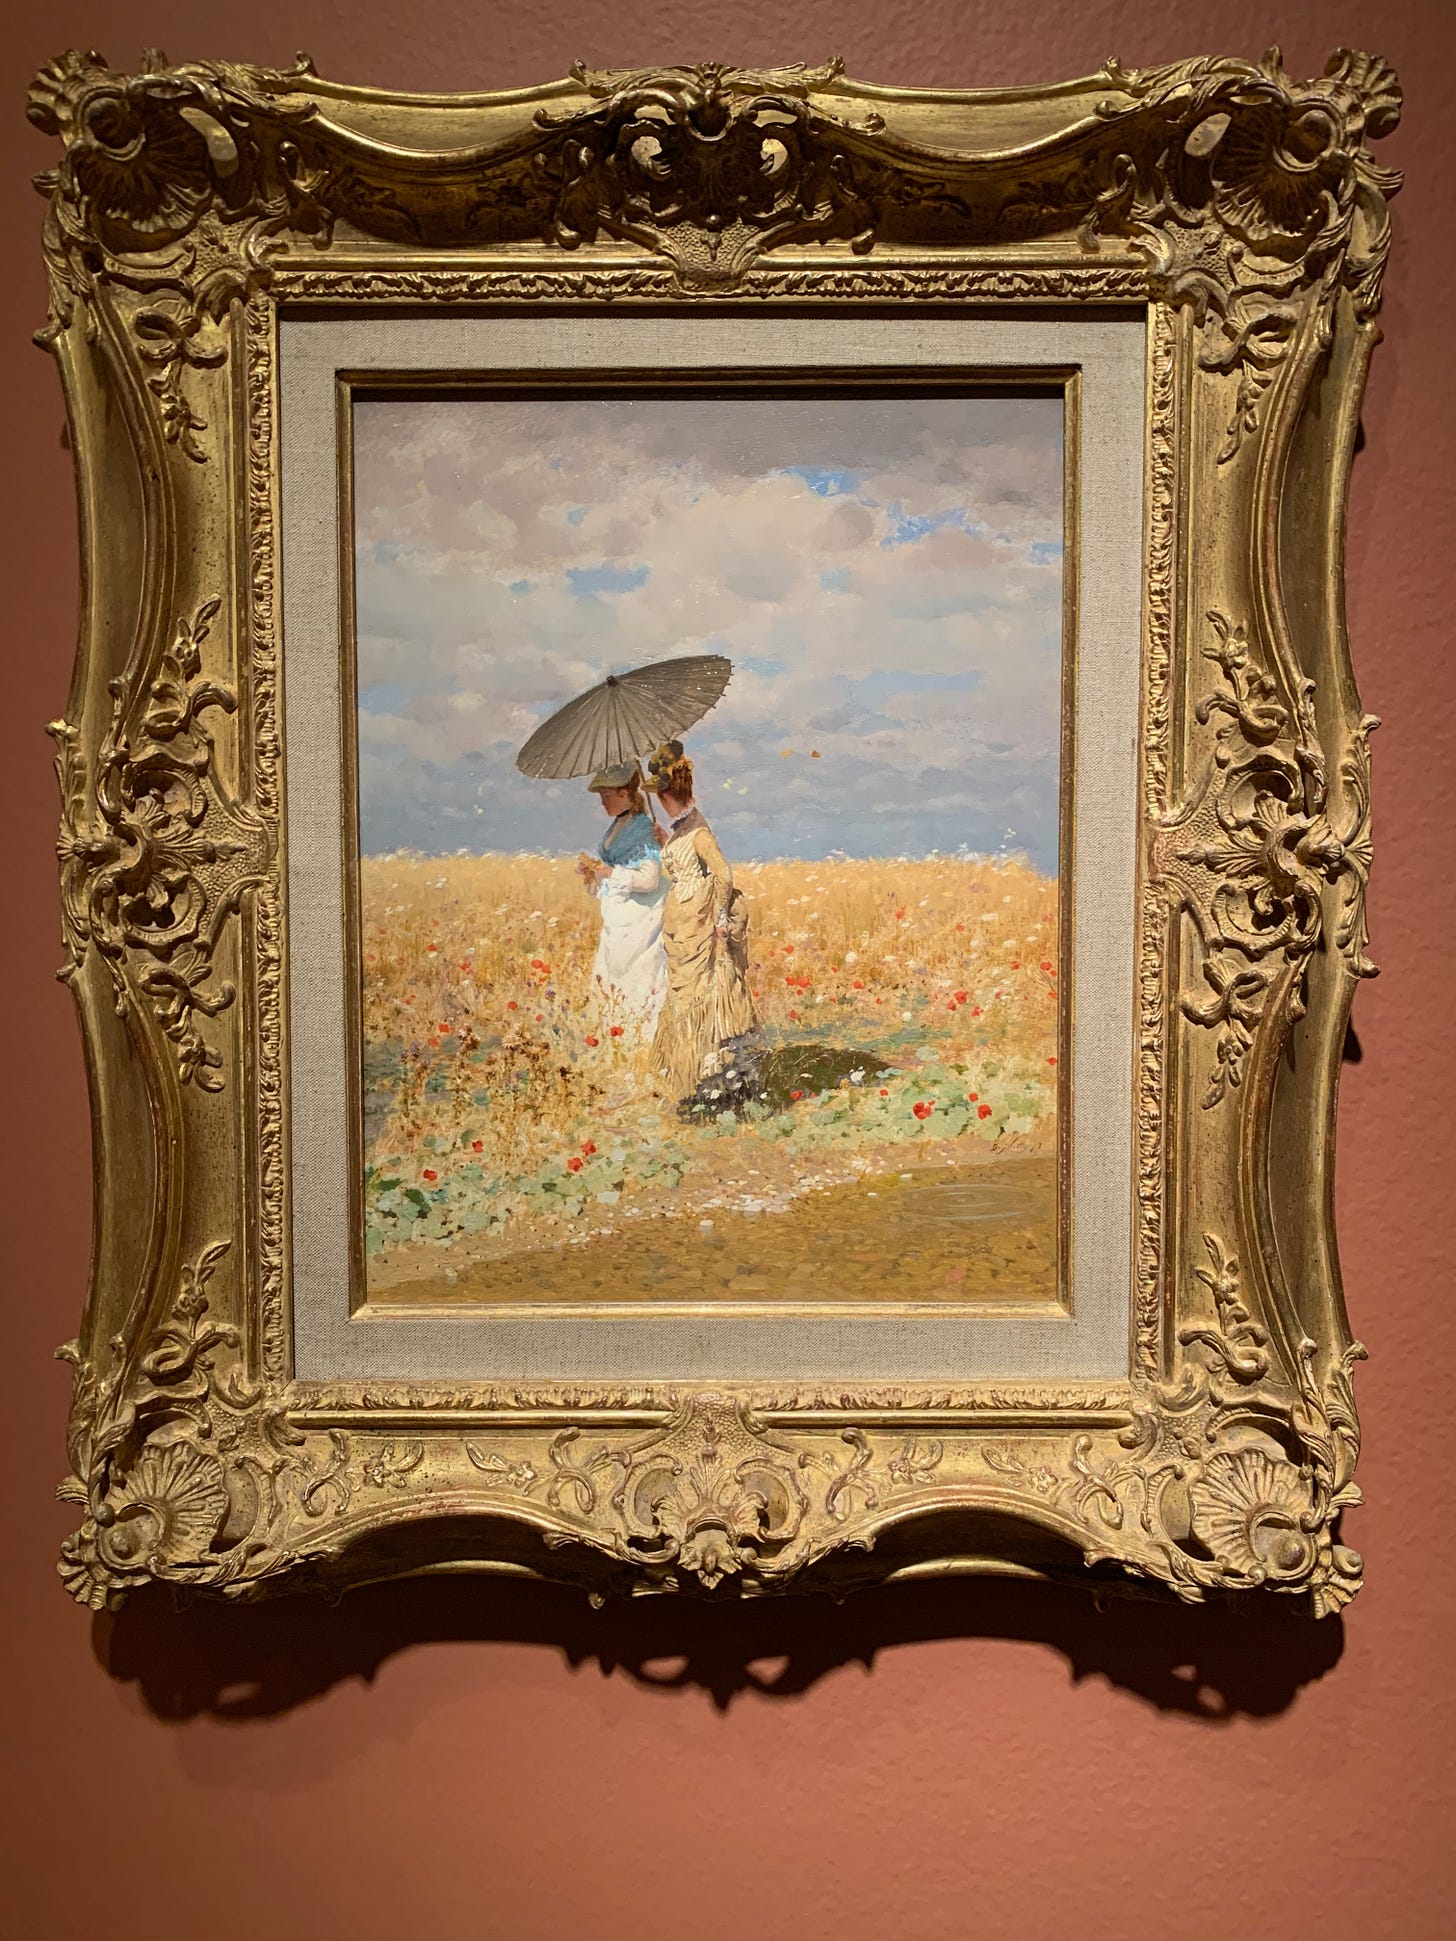 De Nittis’ The Wheat Fields. Two women walking through the fields